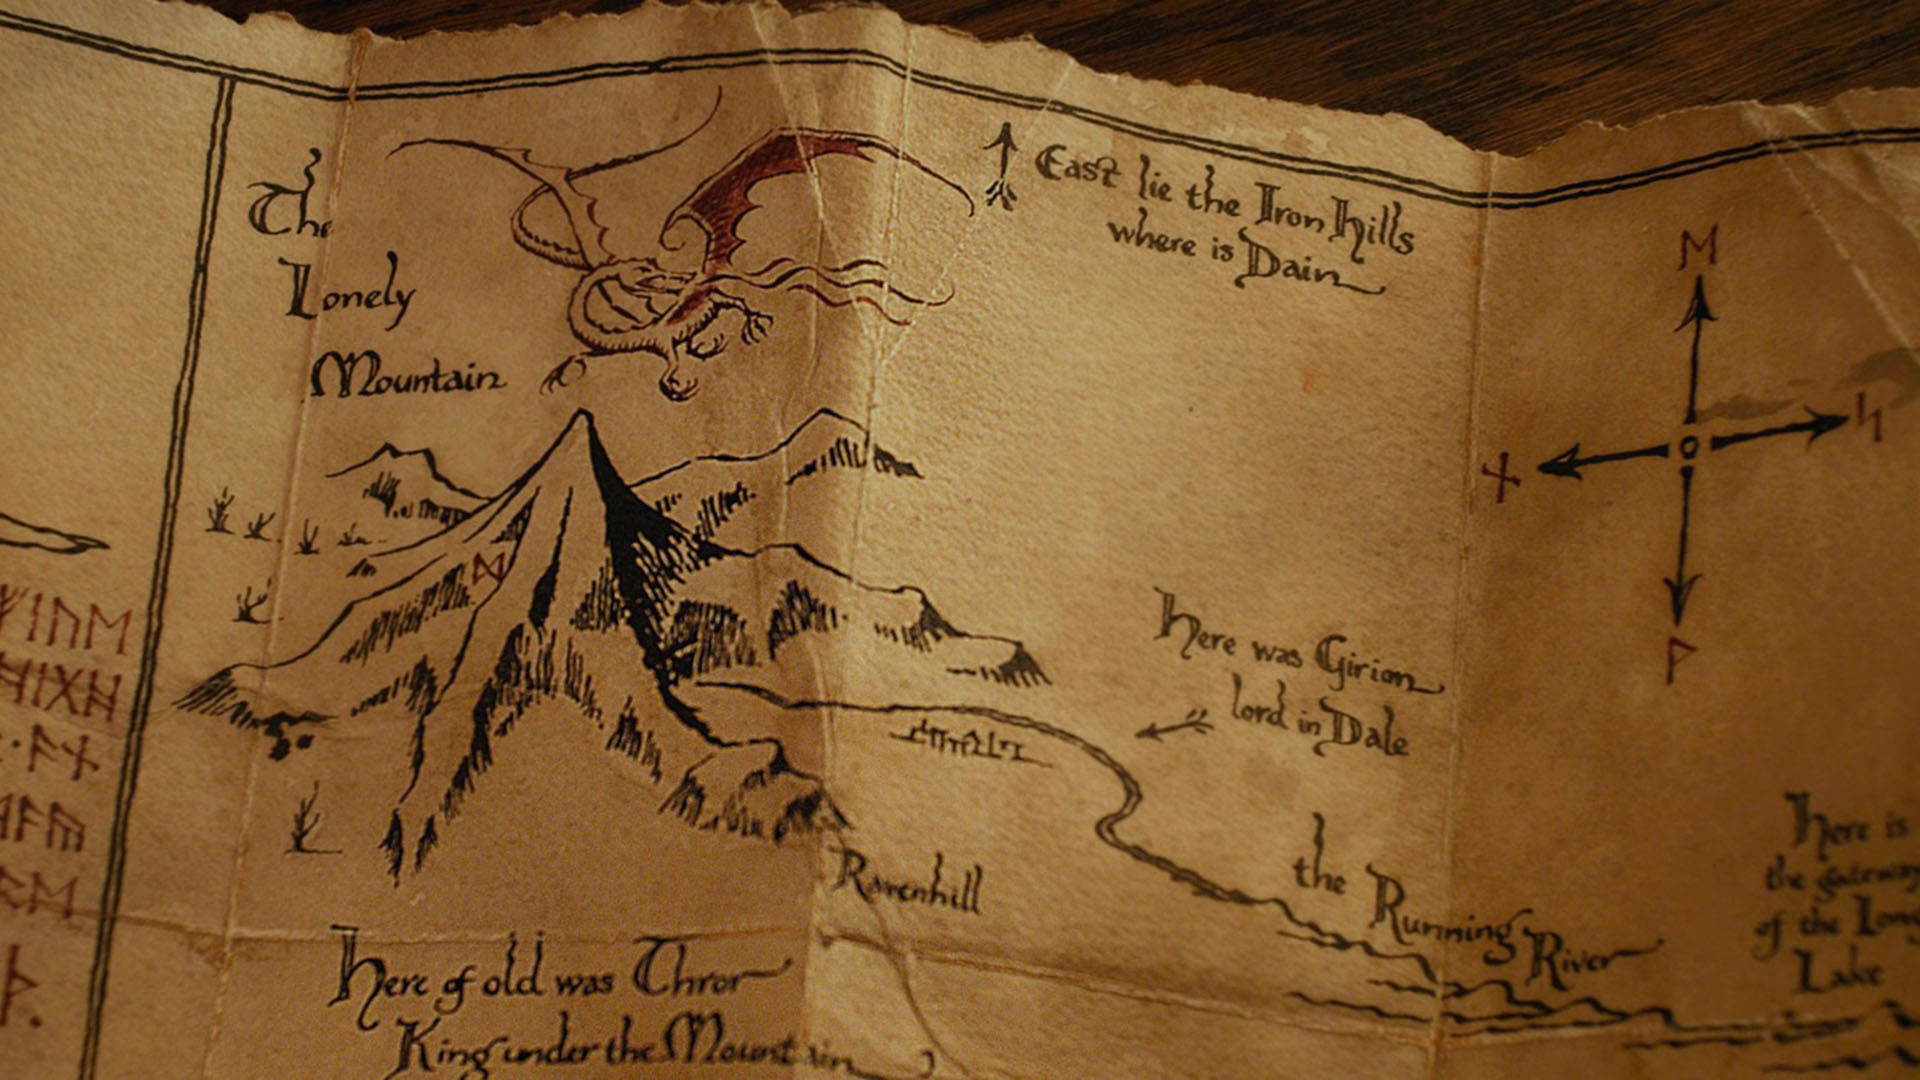 Descarga gratuita de fondo de pantalla para móvil de El Señor De Los Anillos, Películas, El Hobbit: Un Viaje Inesperado.